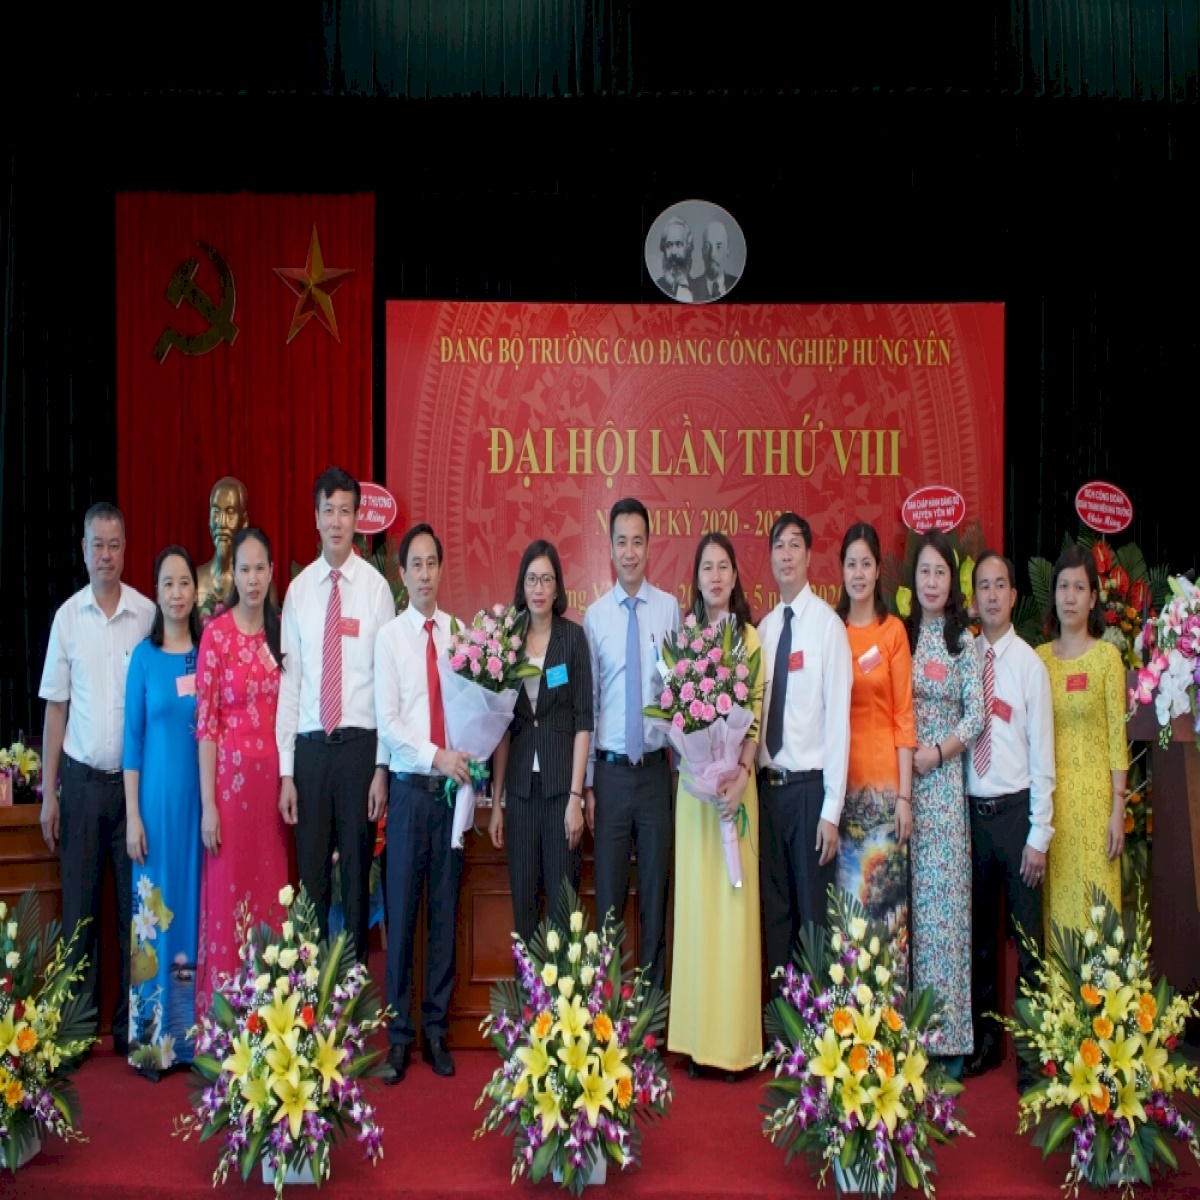 Trường Cao đẳng Công nghiệp Hưng Yên: Liên kết chặt chẽ với doanh nghiệp